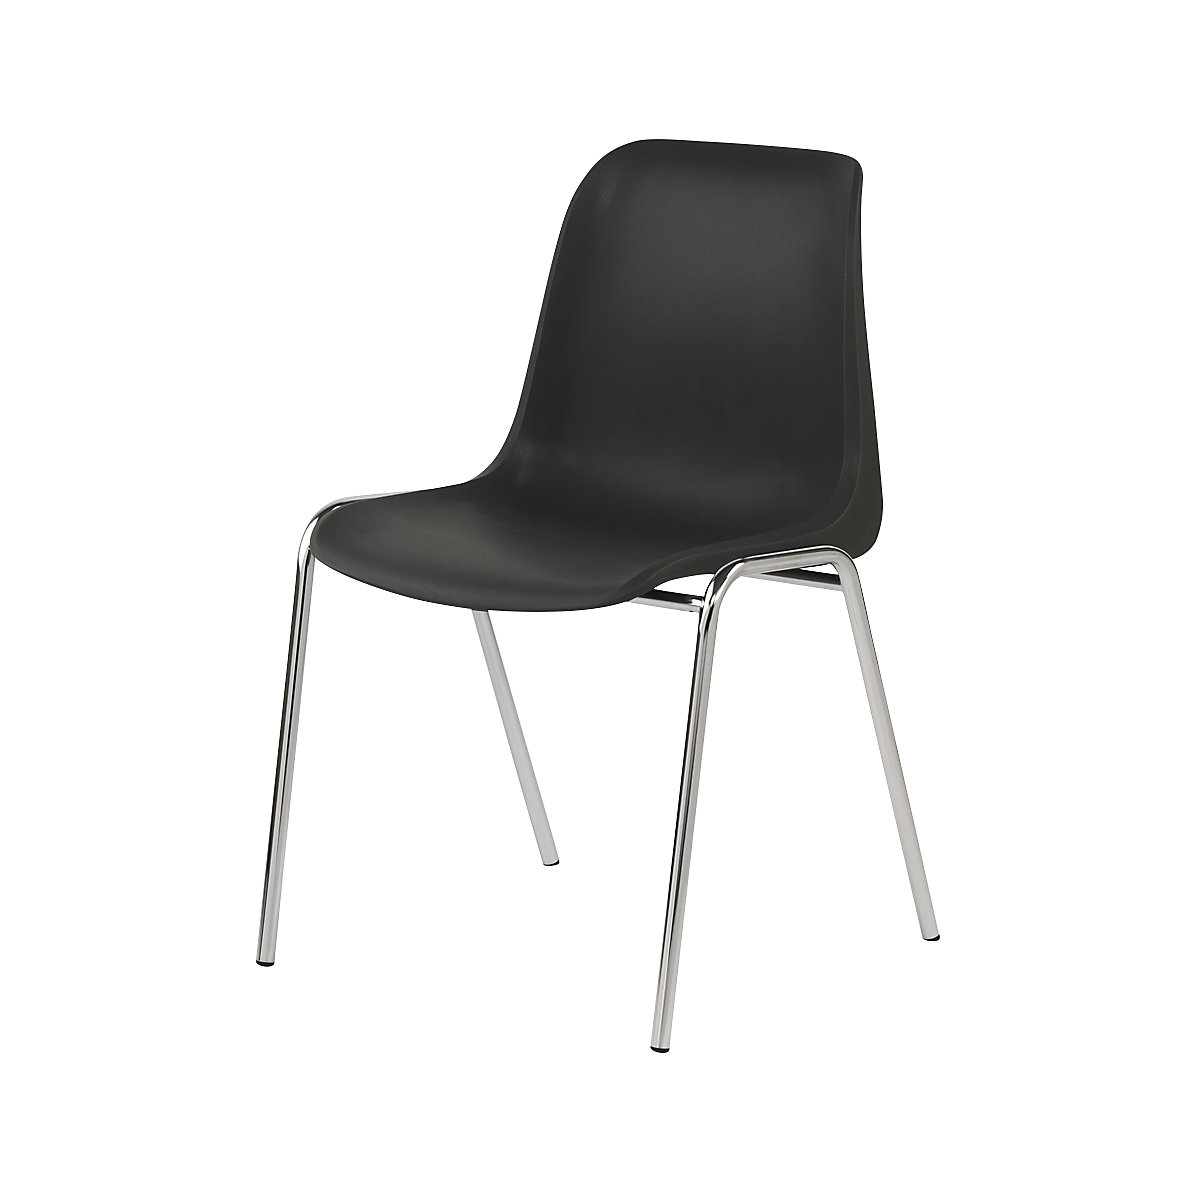 Krzesło z siedziskiem i oparciem z jednego elementu EUROPA, z tworzywa